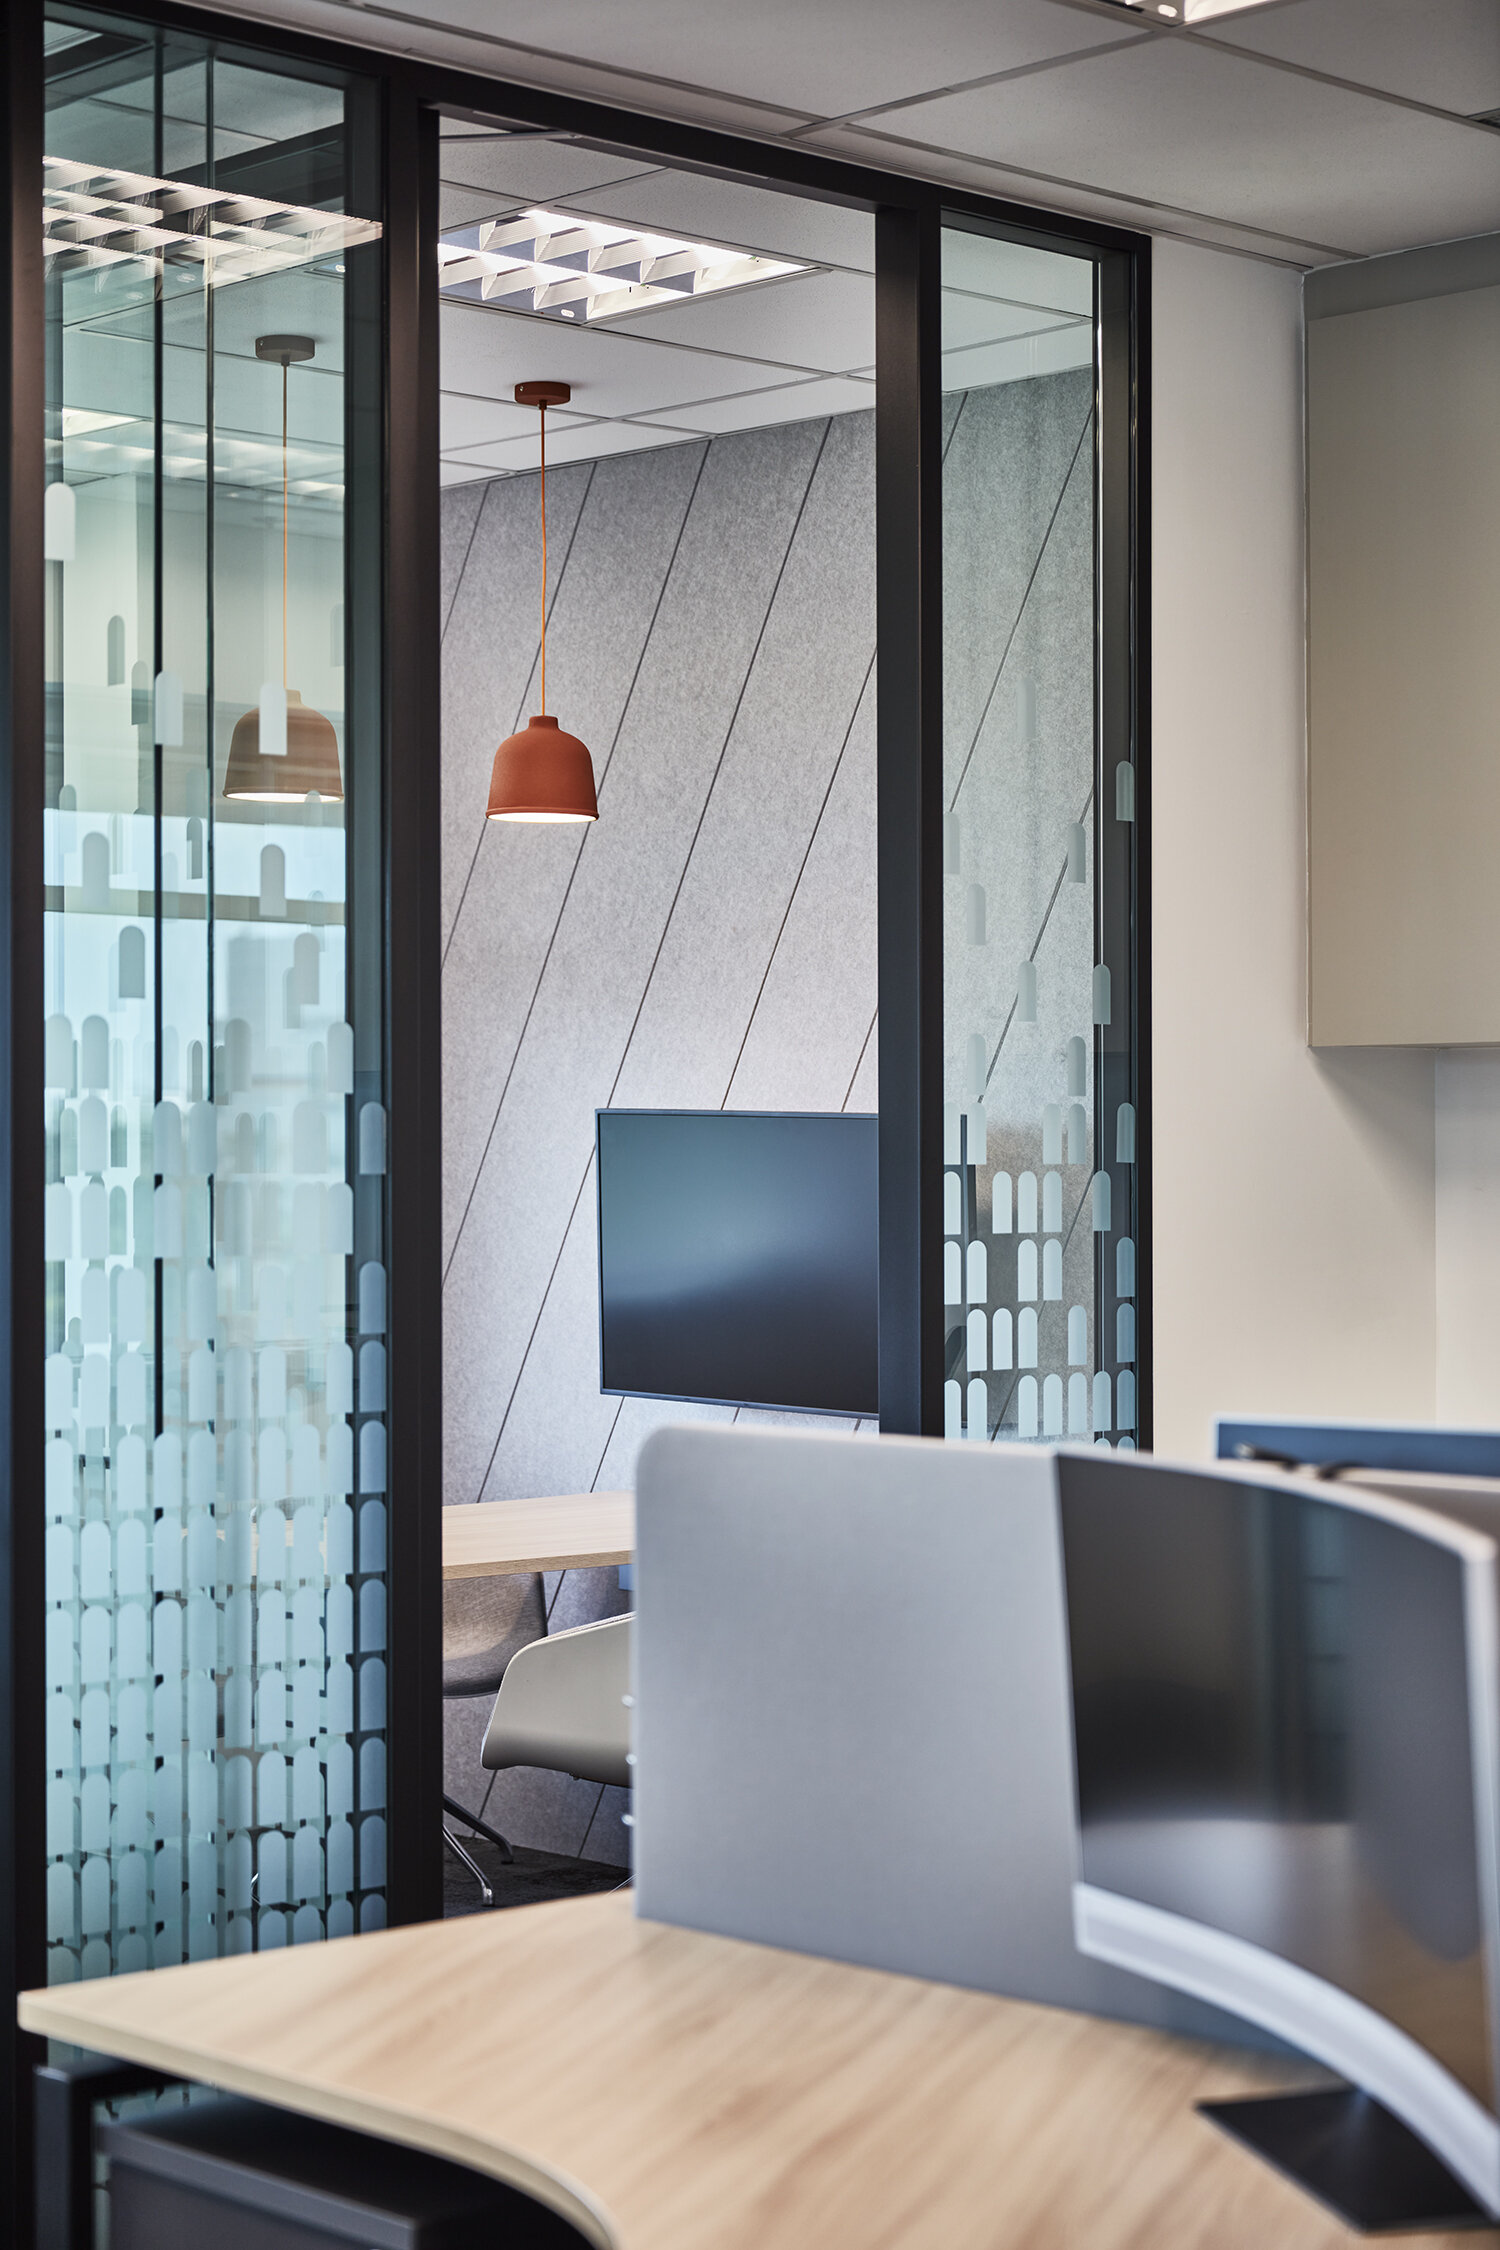  细微的界限、协调的流通安排，以及鲜明的装潢选材有助于区分办公室各处的功能，并维持同事的个人空间与隐私。 